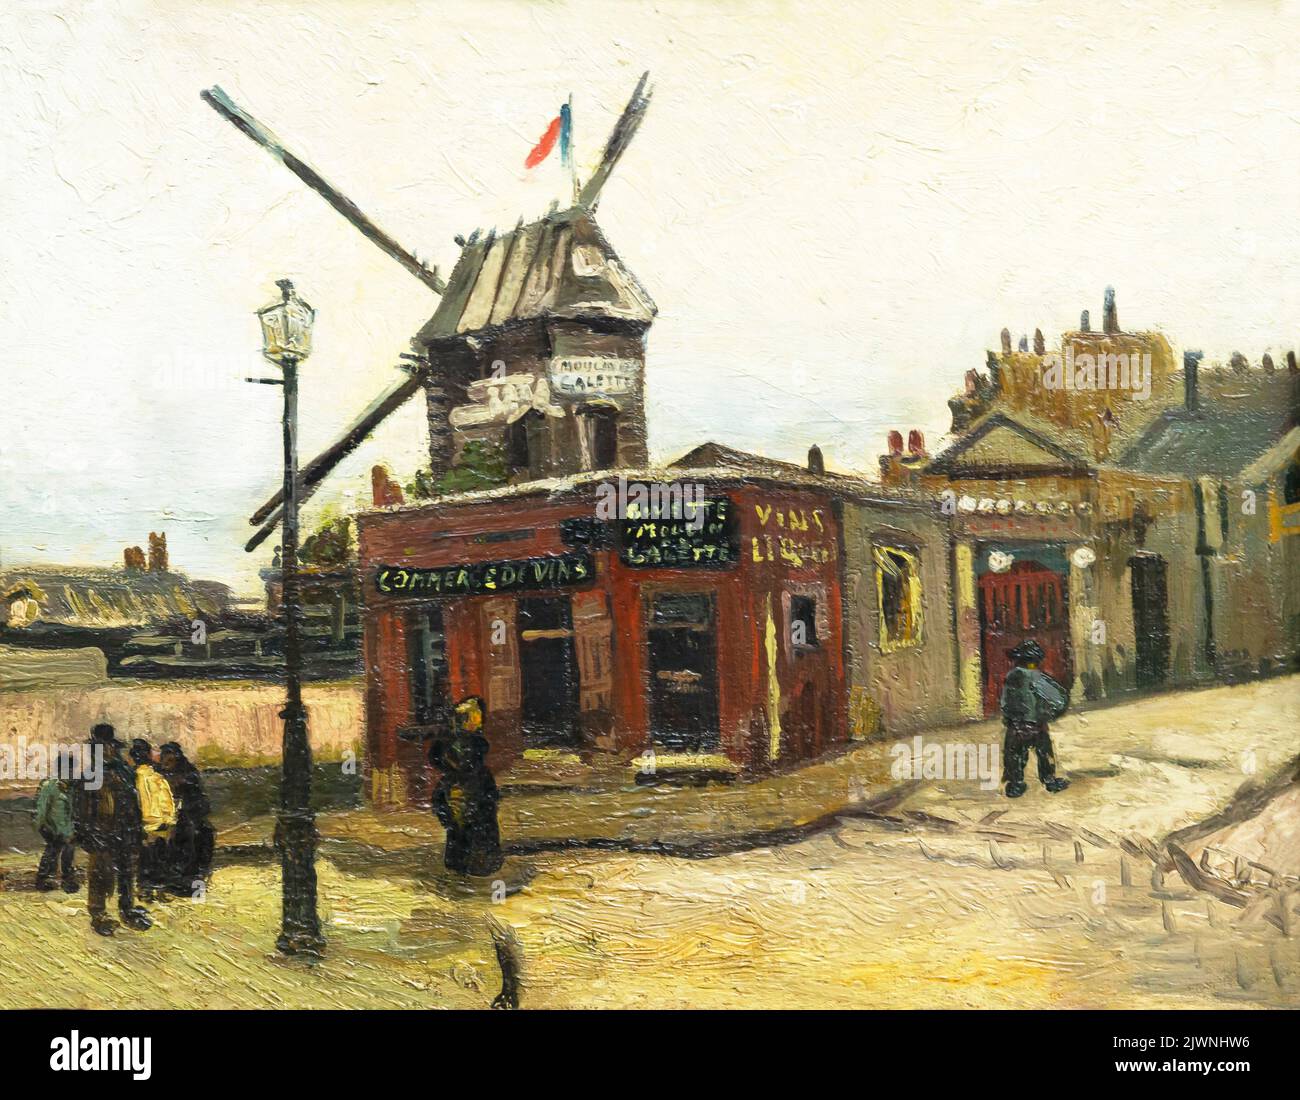 Moulin de la Galette,  Montmartre, Paris, Vincent van Gogh, 1886, Alte Nationalgalerie, Berlin, Germany, Europe Stock Photo